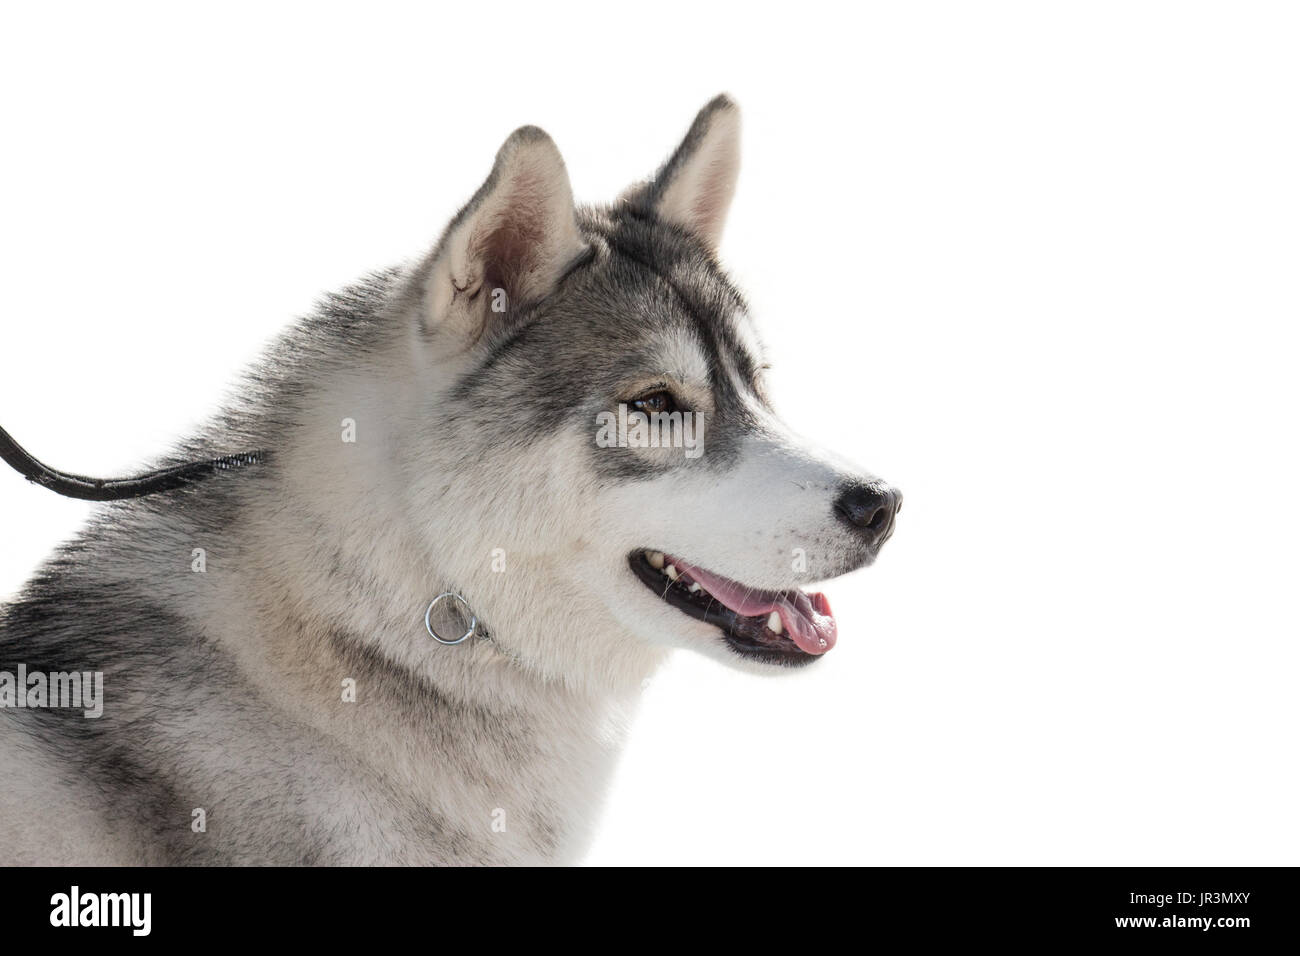 Purebred husky pet dog portrait isolated on white background Stock Photo